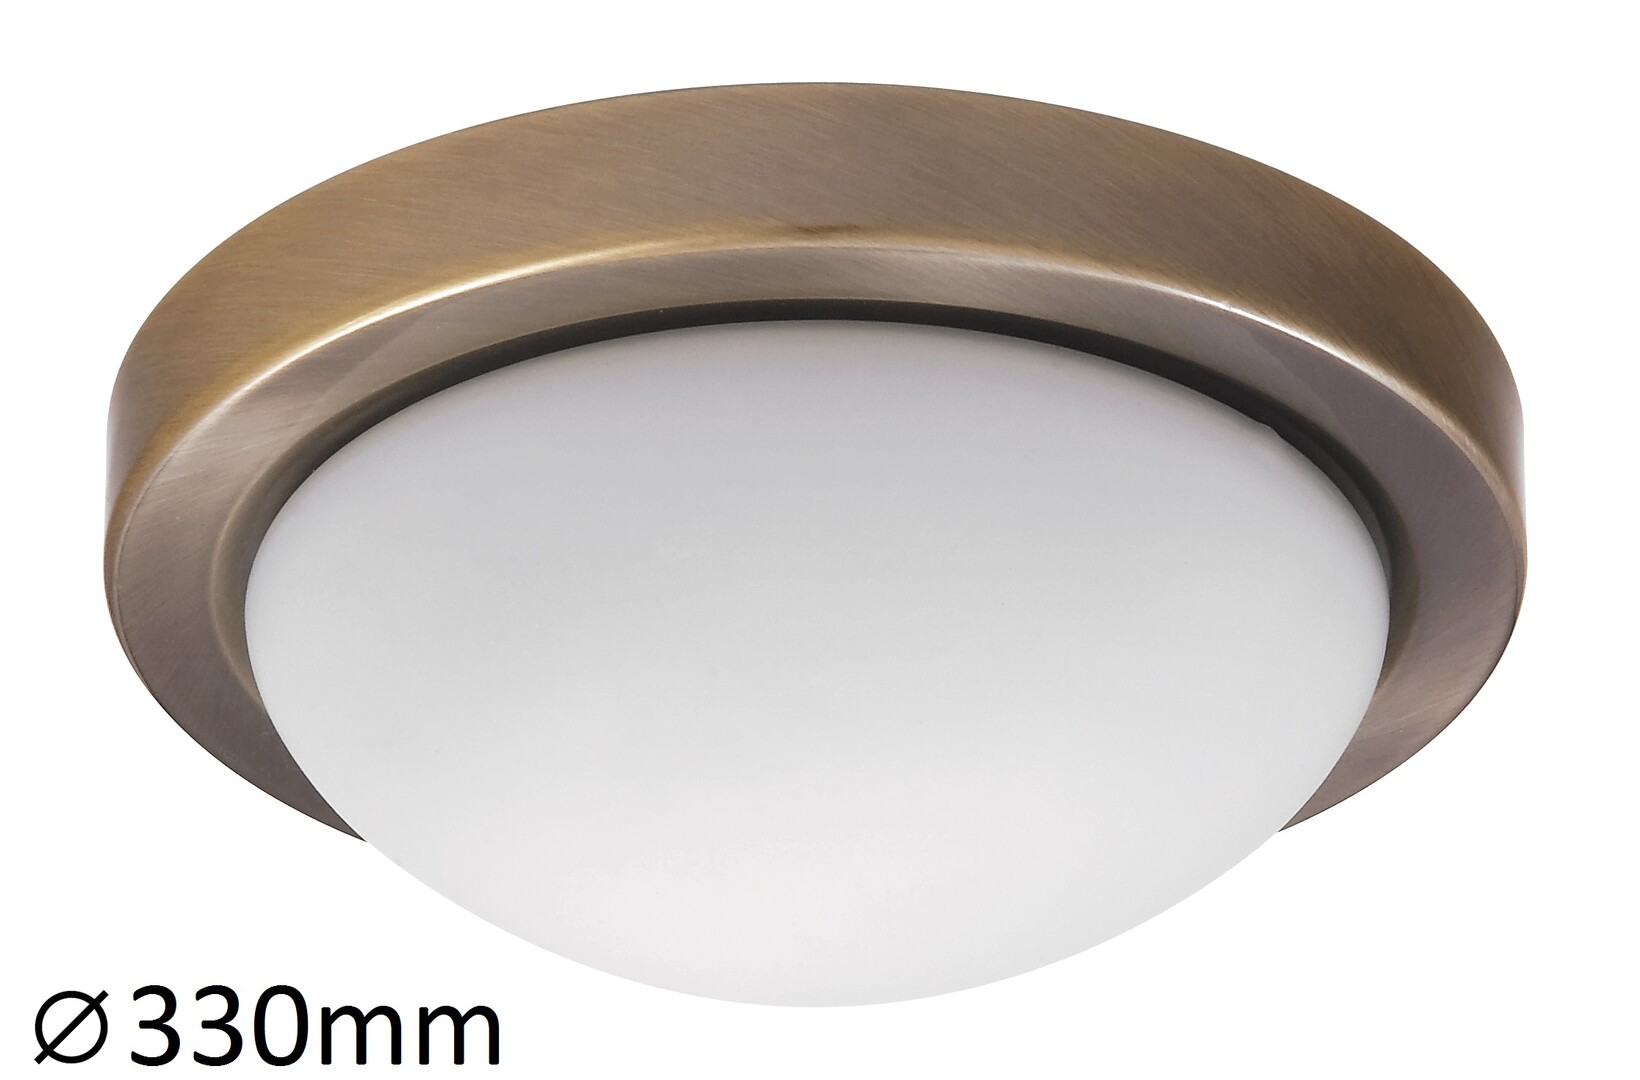 Deckenleuchte 2 Spots Disky 3564, E27, Metall, bronze-silber, rund, Standard, ø330mm